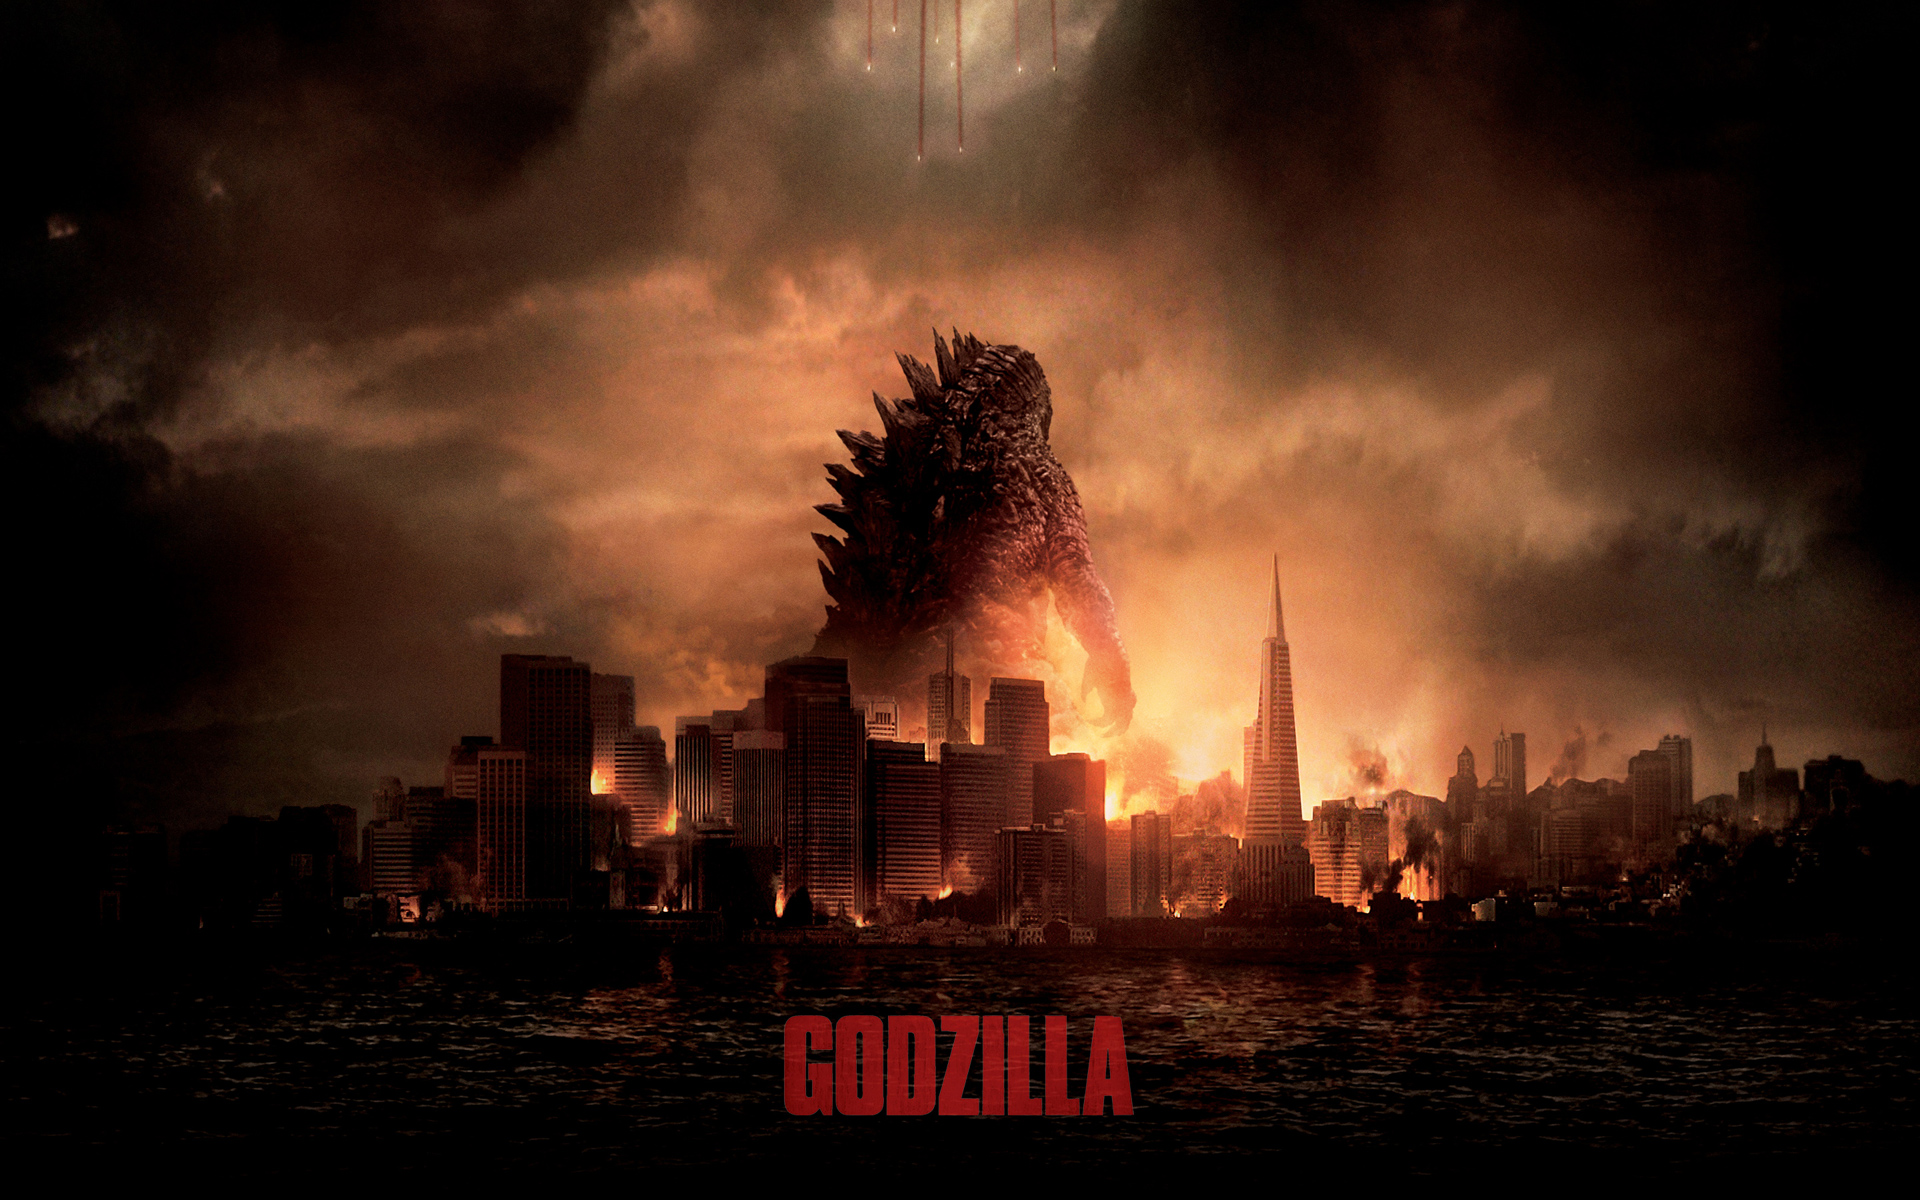 Trailer : Filem Godzilla Versi Baru, Lebih Awesome Dari Yang Dulu